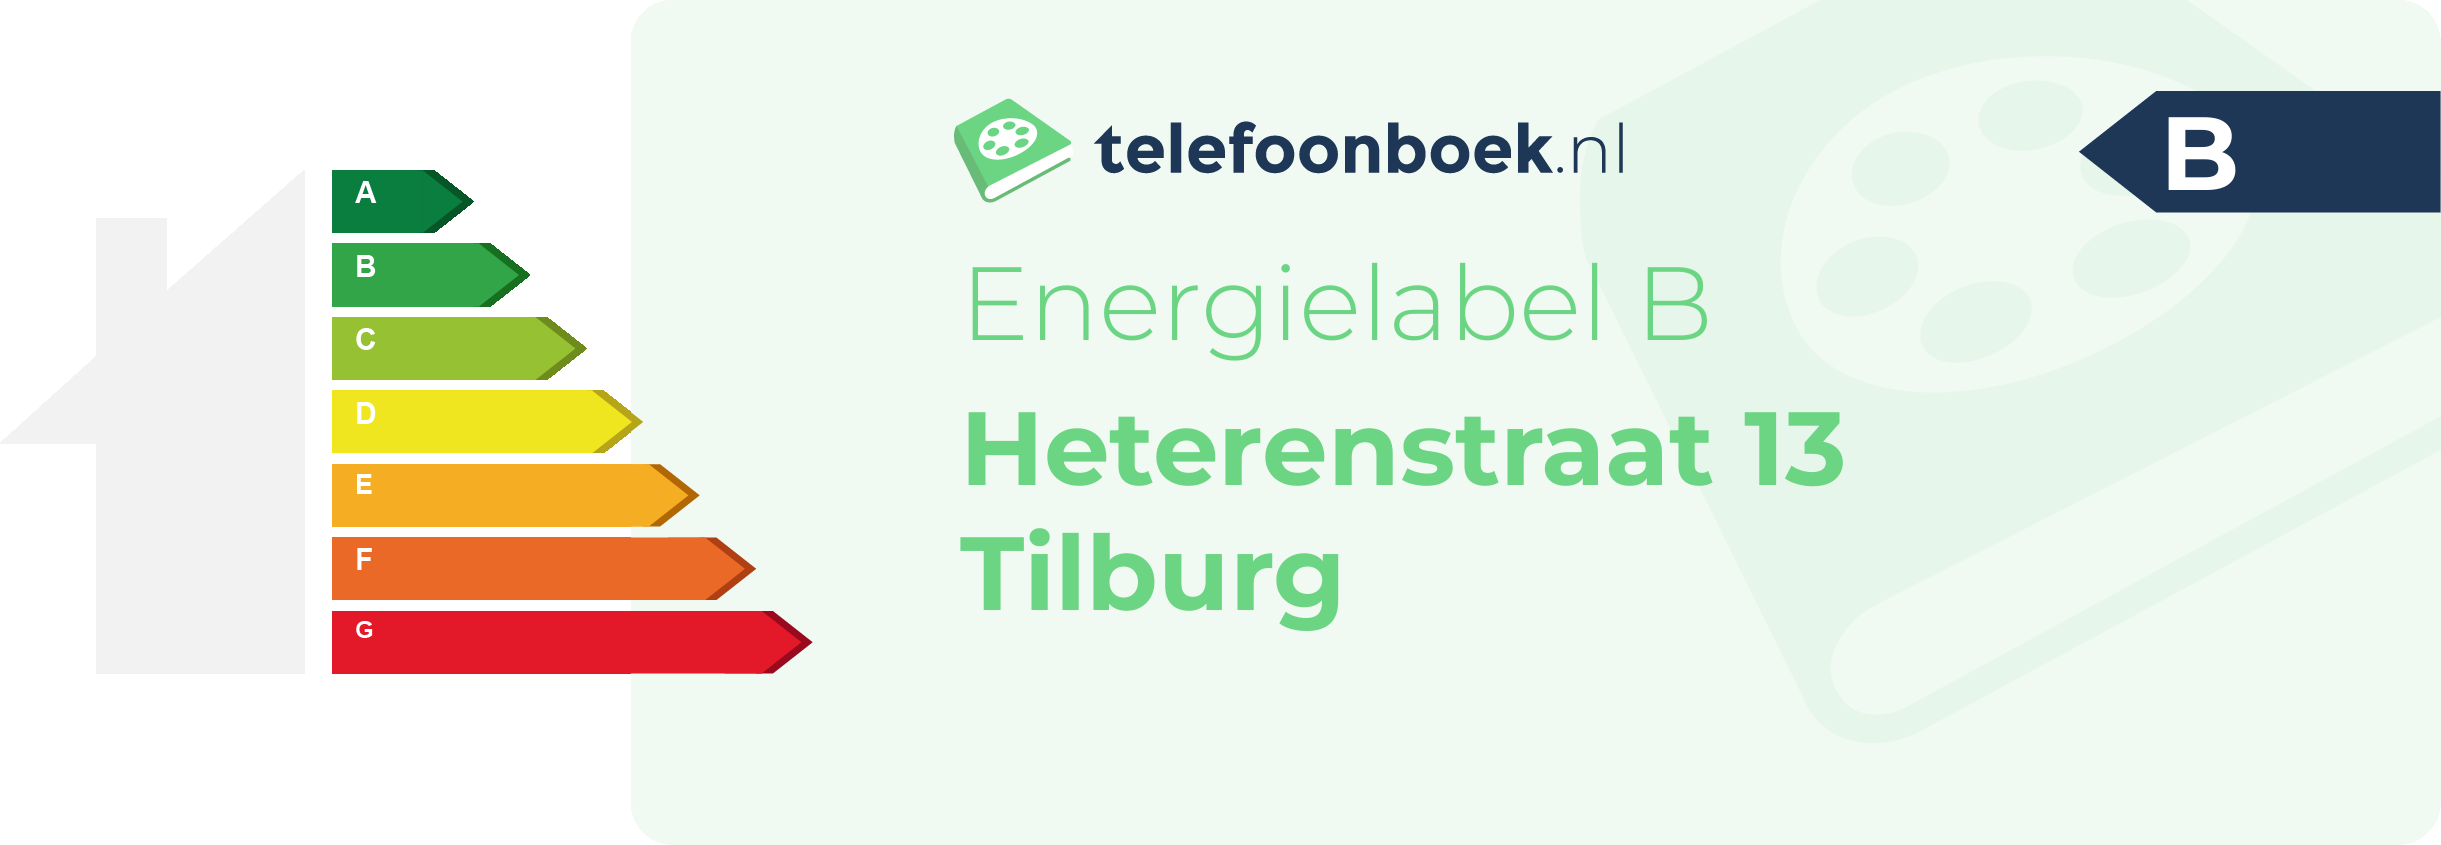 Energielabel Heterenstraat 13 Tilburg